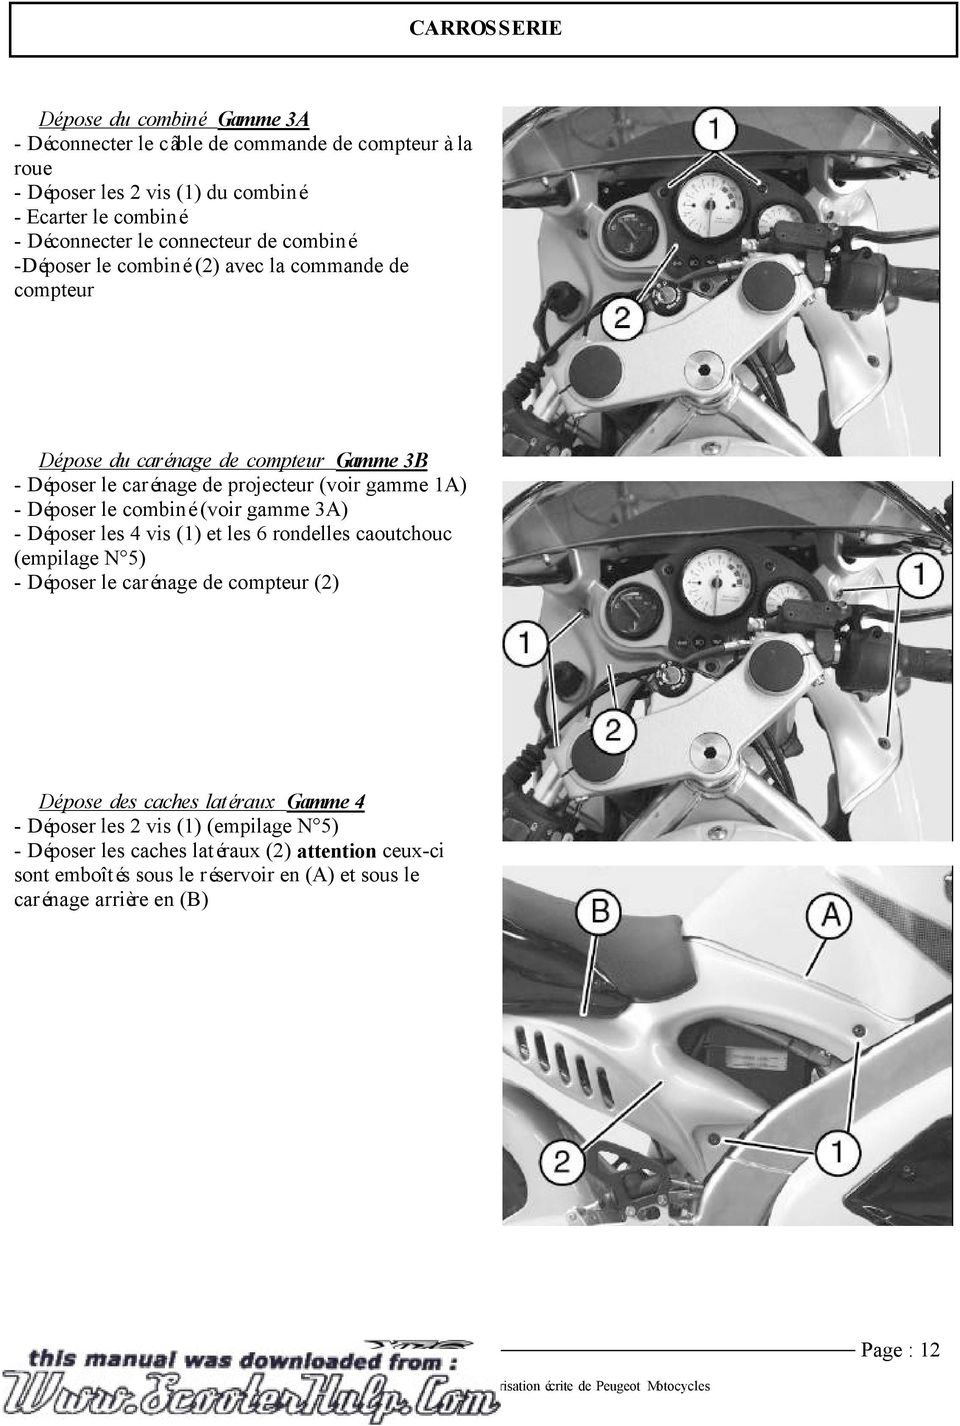 Déposer le combiné (voir gamme 3A) - Déposer les 4 vis (1) et les 6 rondelles caoutchouc (empilage N 5) - Déposer le carénage de compteur (2) Dépose des caches latéraux